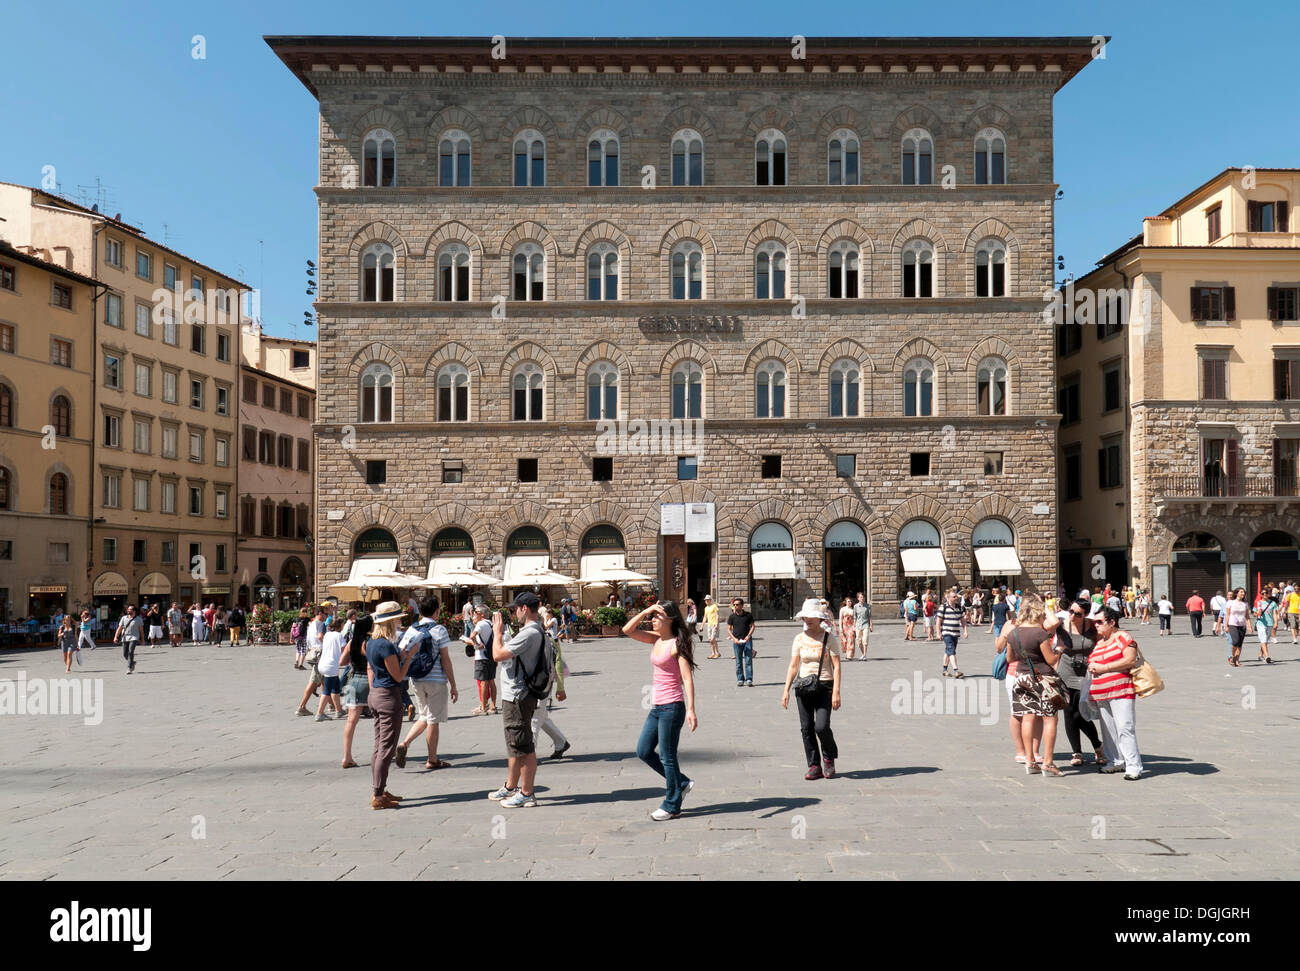 Palazzo delle Assicurazioni Generali, Piazza della Signoria, Florence, Tuscany, Italy, Europe Stock Photo